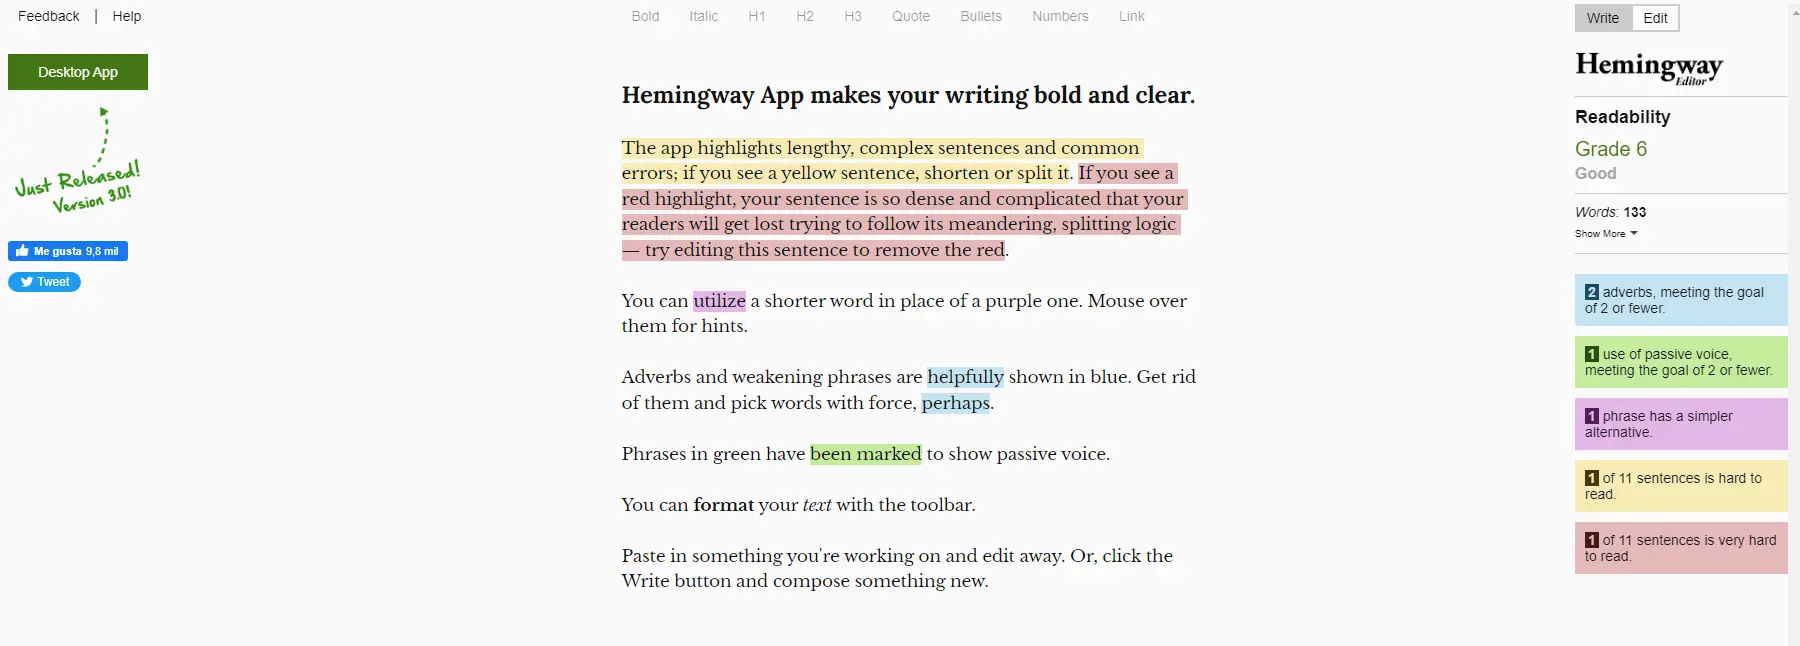 Hemingway Asistente de escritura para redacción clara